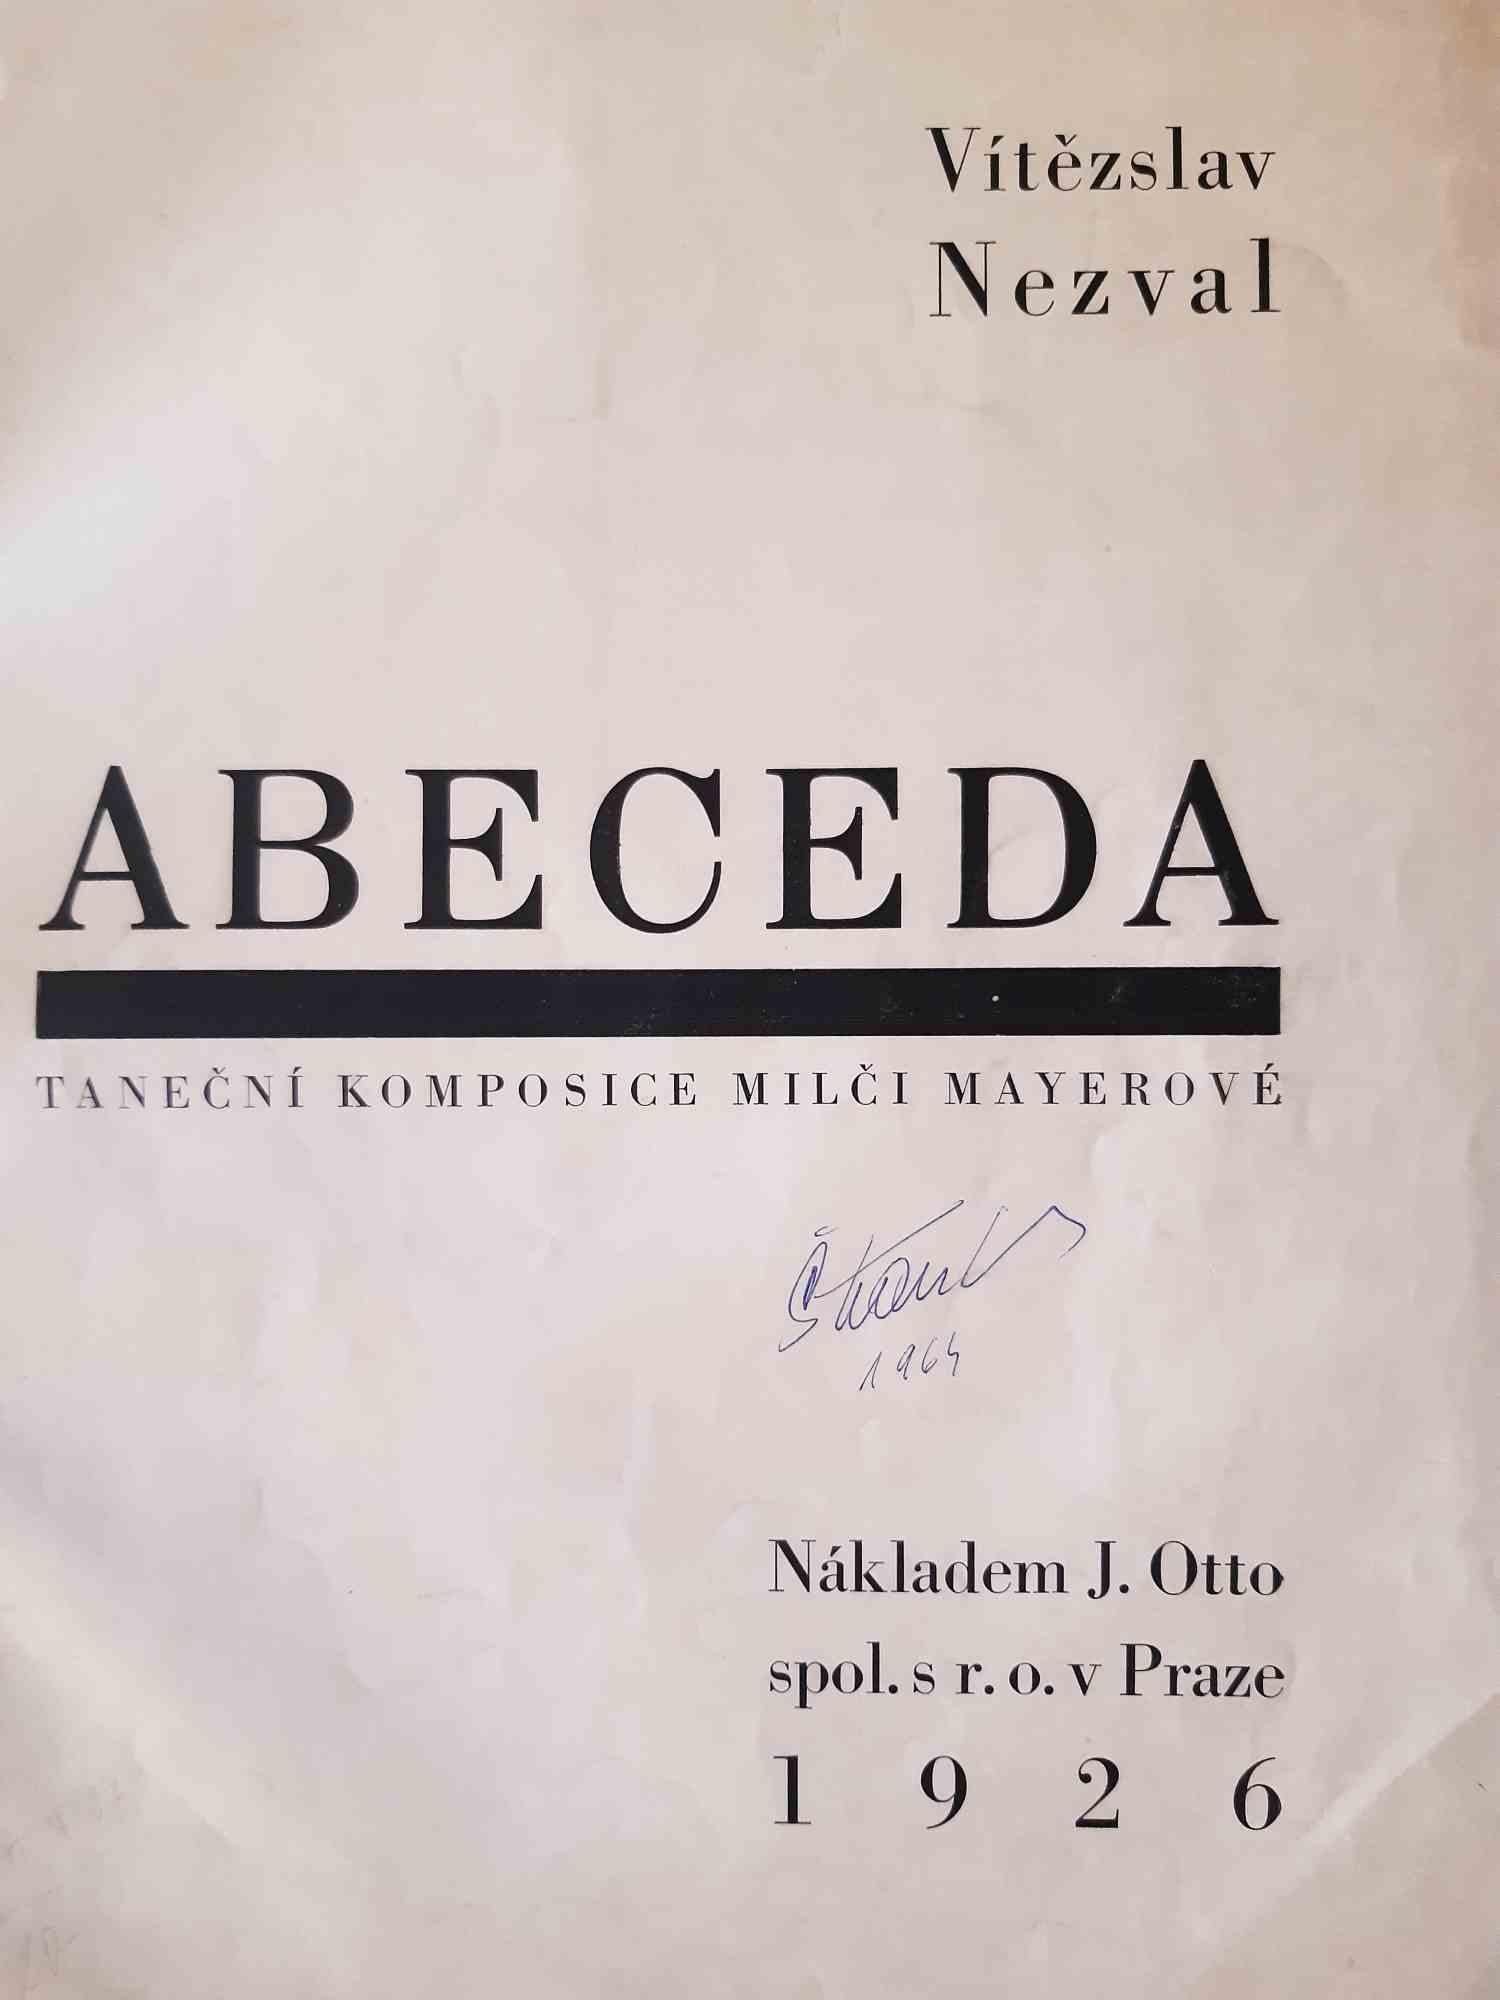 ABECEDA ist ein modernes, seltenes Buch, das von Vítezslav Nezval (Prag, 26. Mai 1900 - 6. April 1958) geschrieben und von Karel Teige (13. Dezember 1900 - 1. Oktober 1951) im Jahr 1926 illustriert wurde.

Originalausgabe.

2000